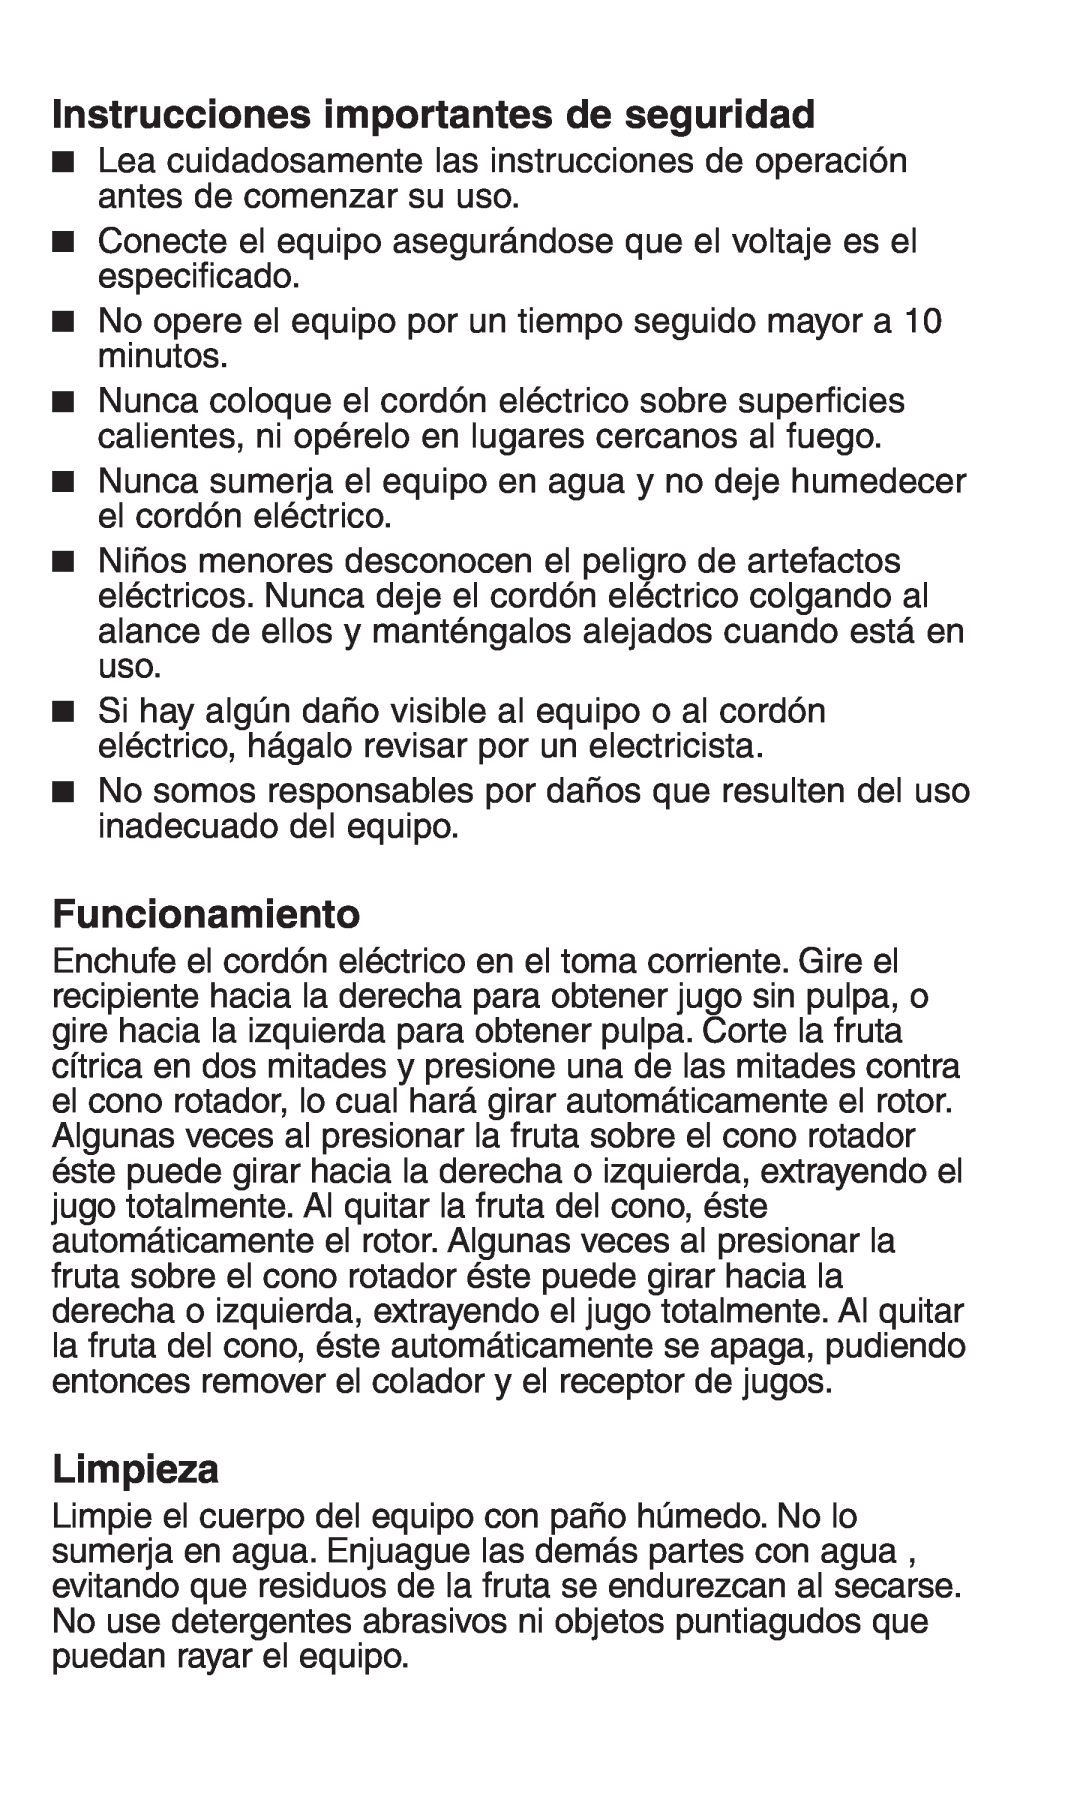 Continental Electric CE22671 manual Instrucciones importantes de seguridad, Funcionamiento, Limpieza 